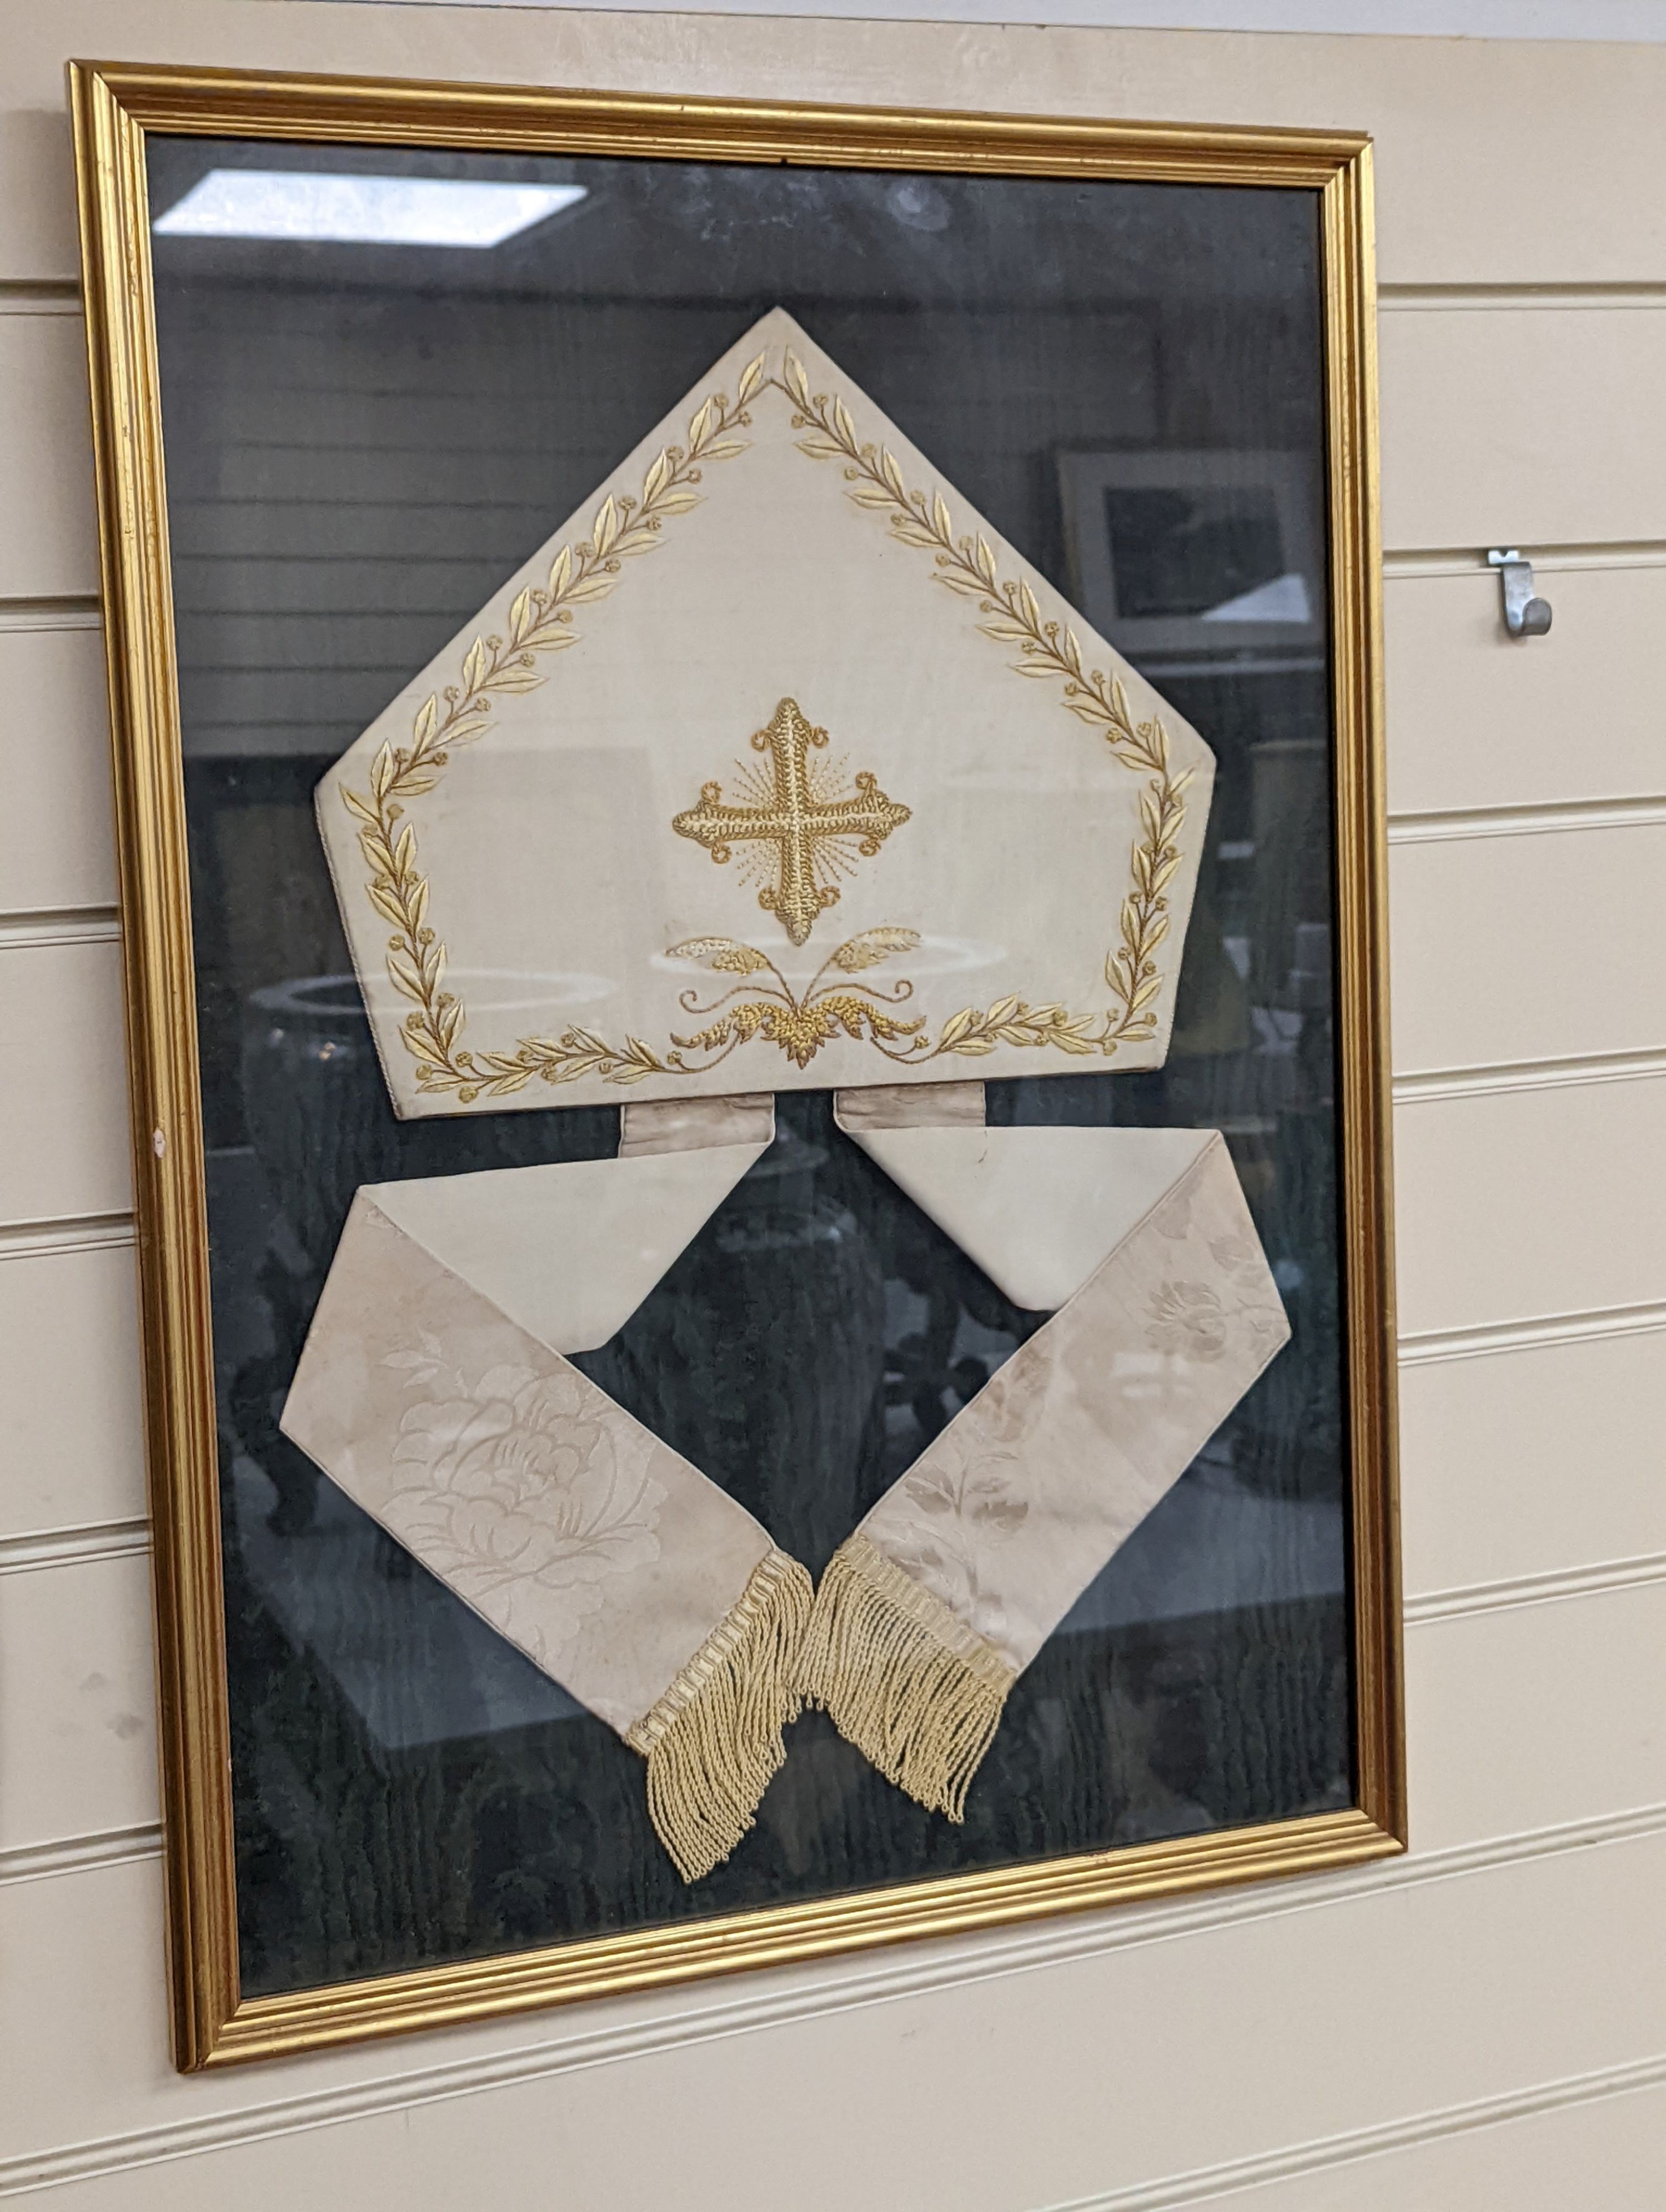 A framed bishop's mitre